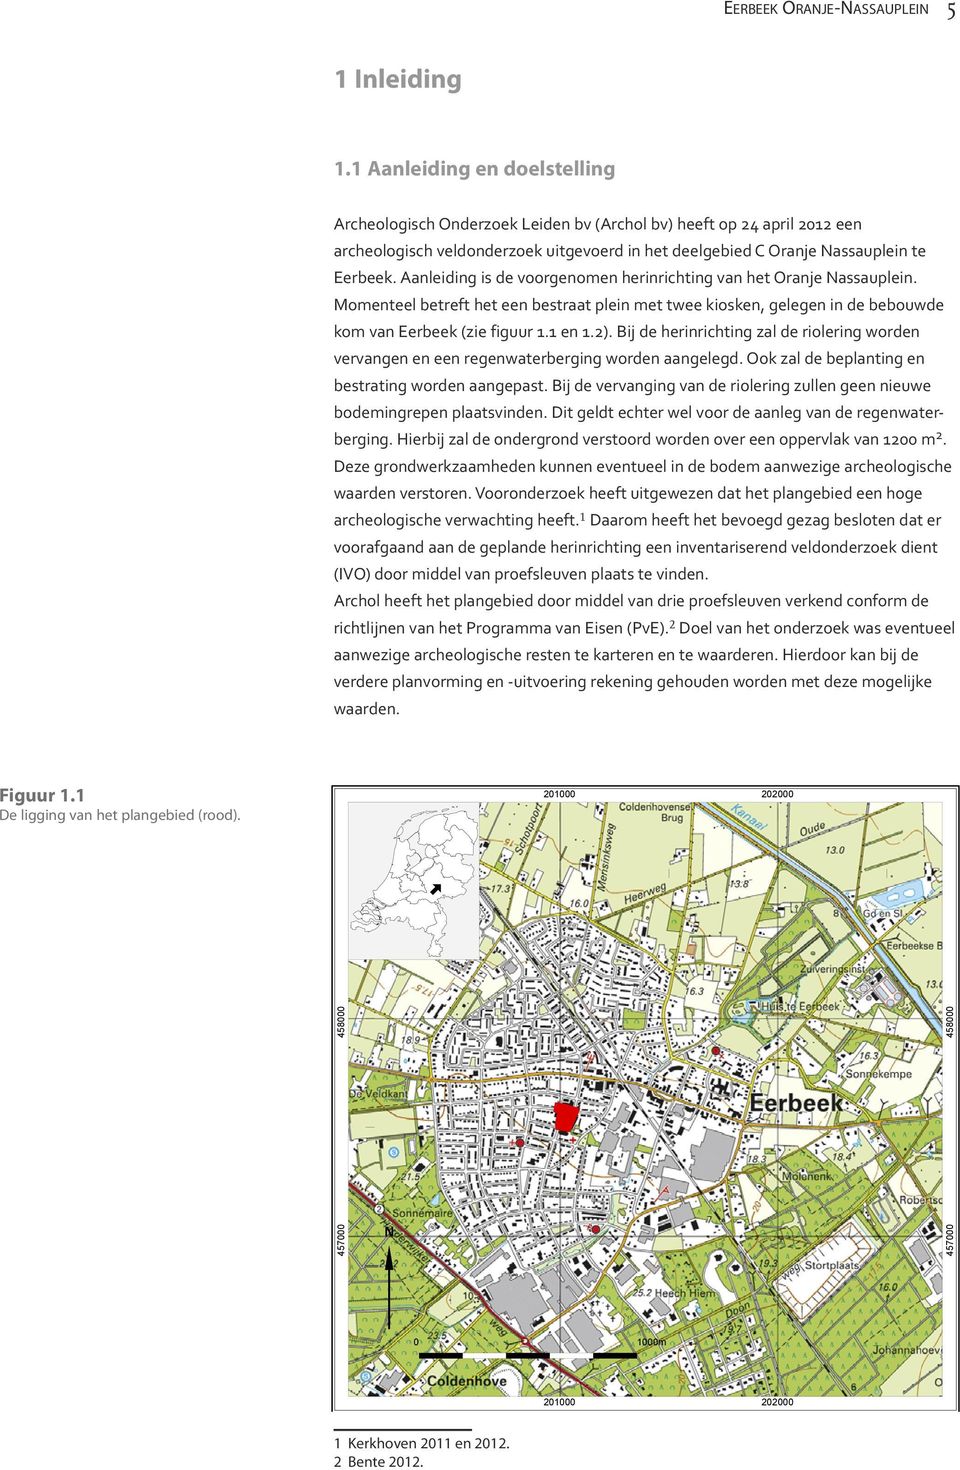 Aanleiding is de voorgenomen herinrichting van het Oranje Nassauplein. Momenteel betreft het een bestraat plein met twee kiosken, gelegen in de bebouwde kom van Eerbeek (zie figuur 1.1 en 1.2).